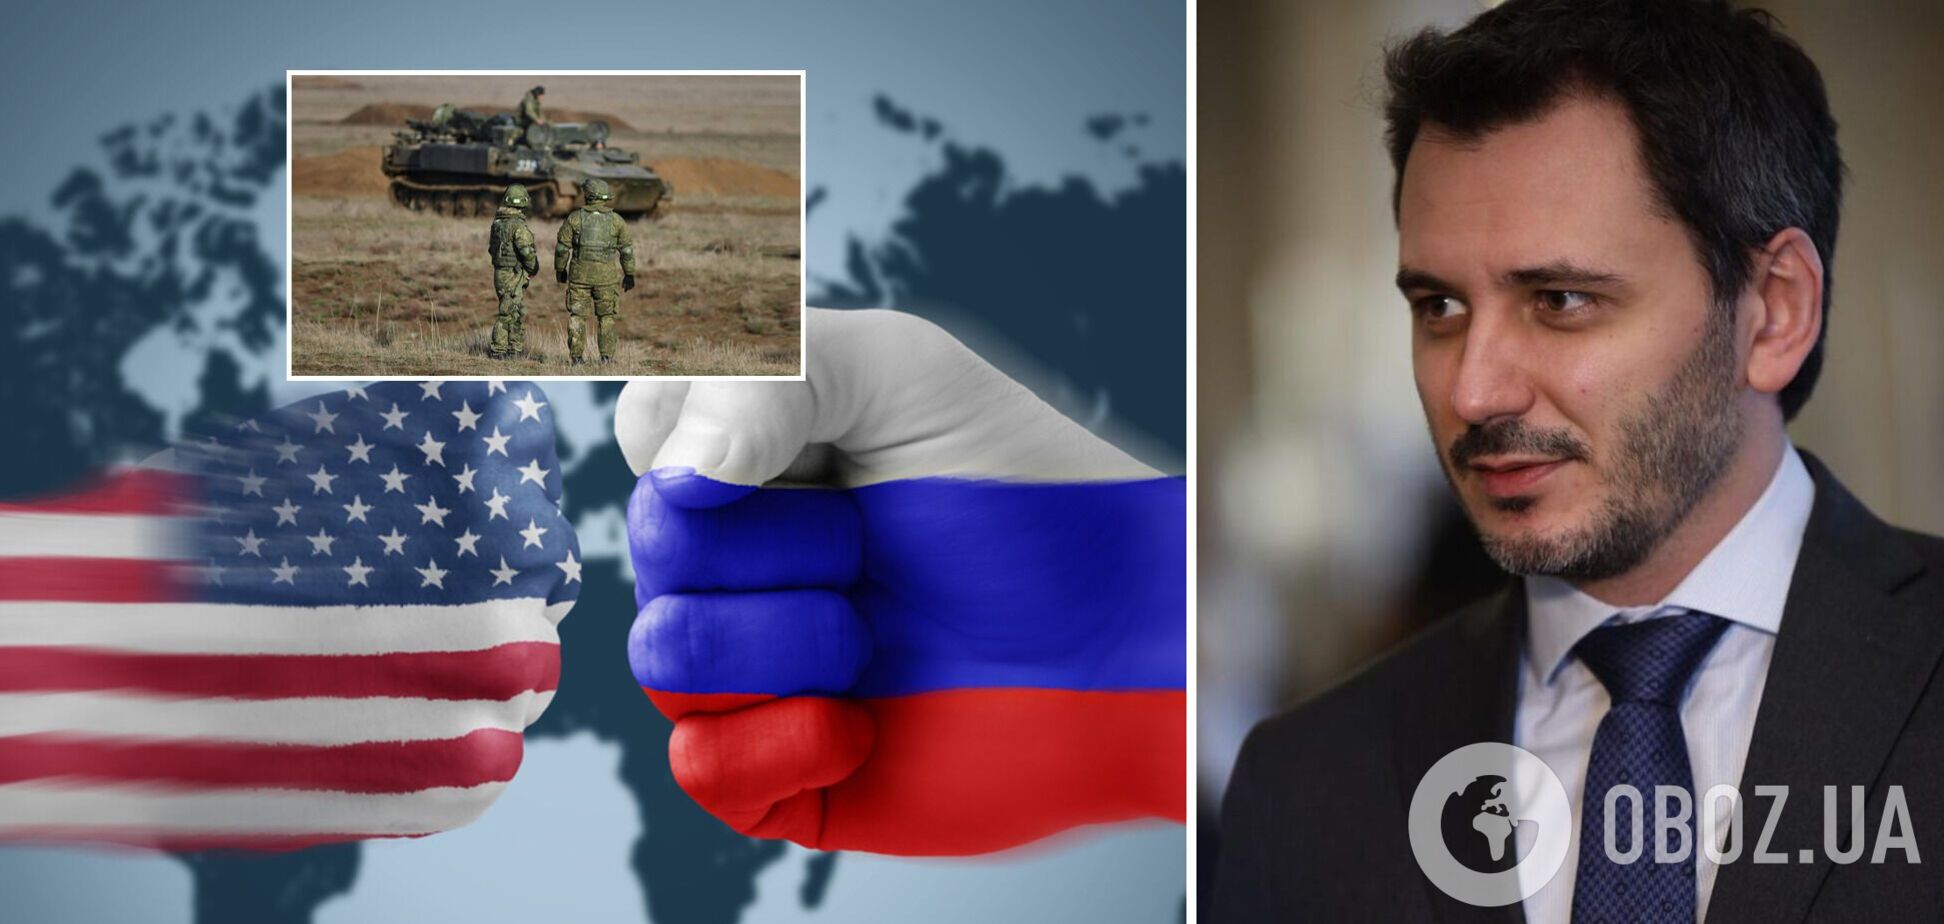 США проводят крупнейшую спецоперацию против РФ: что нужно знать украинцам и почему нельзя поддаваться панике